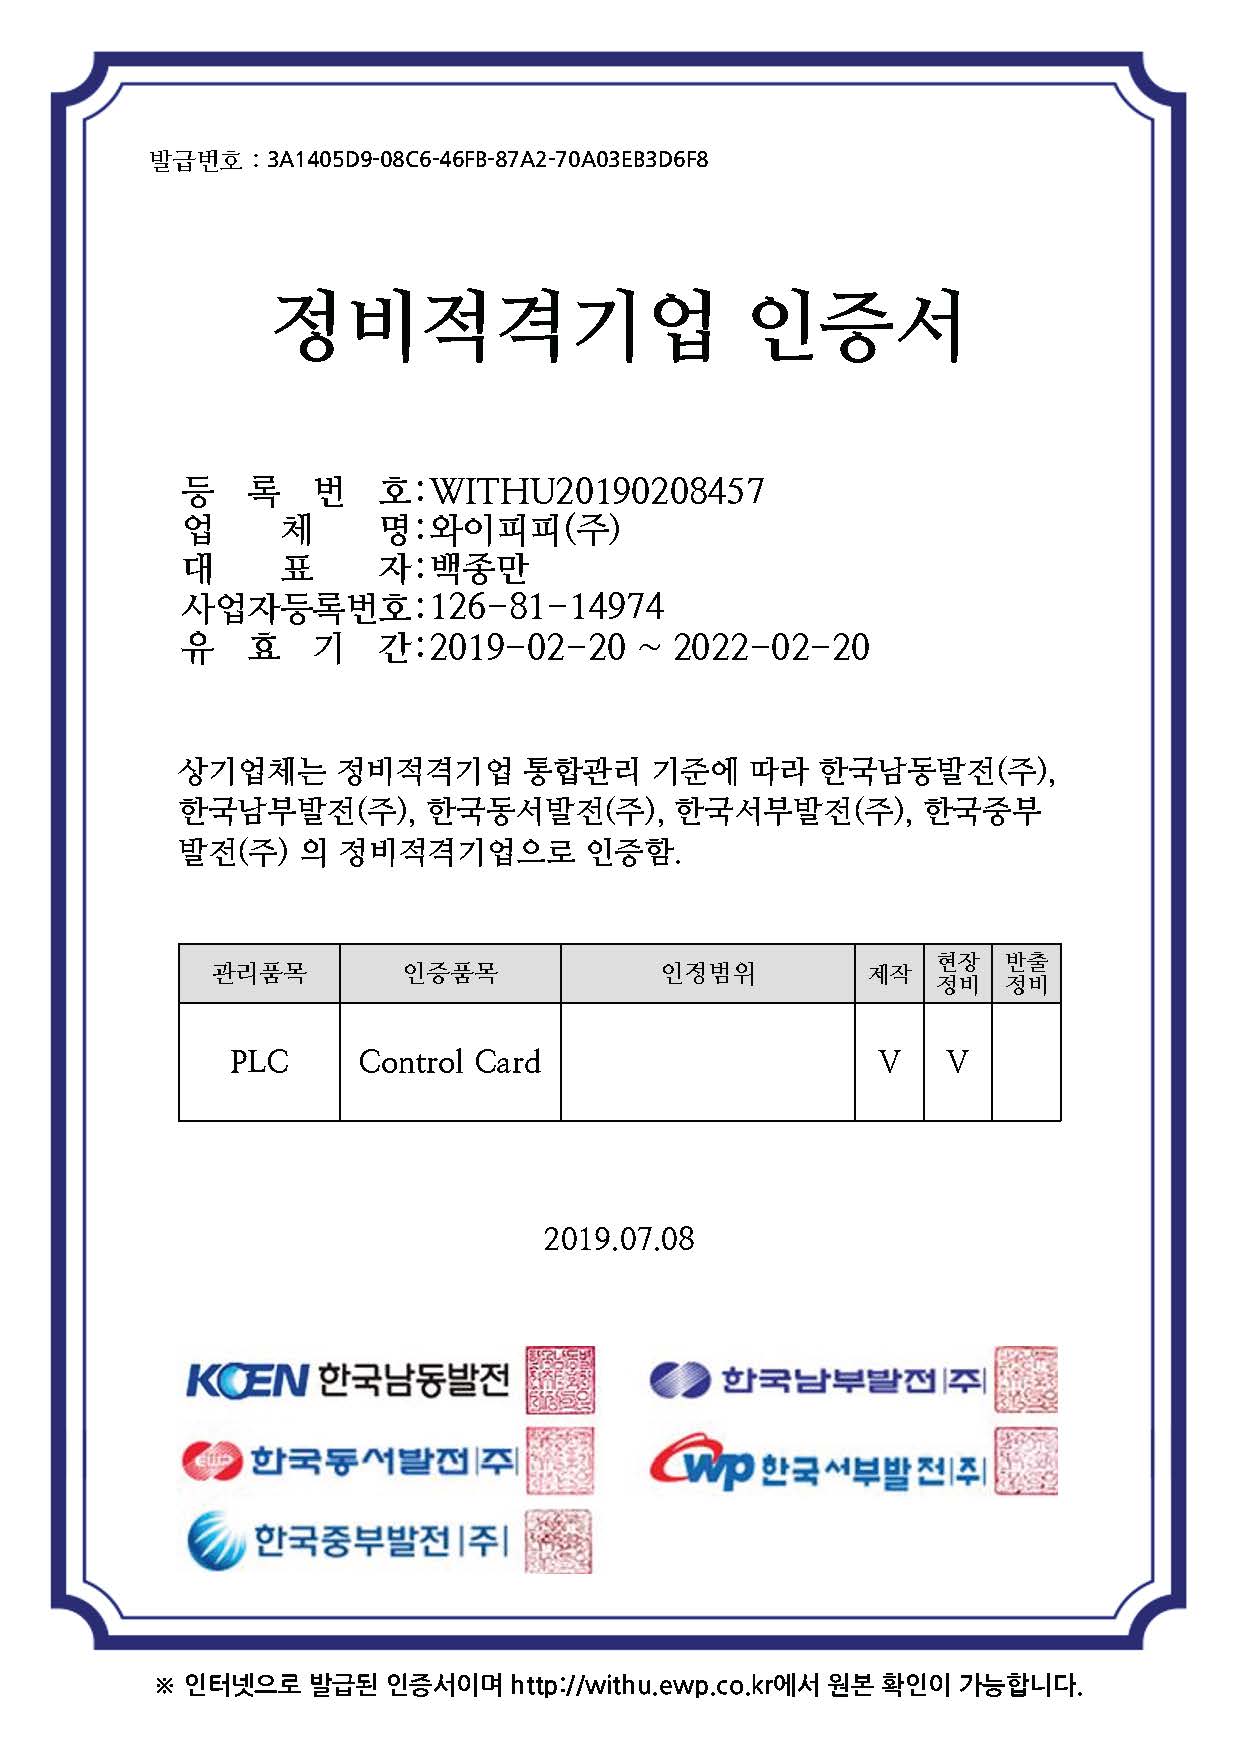 발전5개사-PLC_Control card 정비적격기업 인증서.jpg